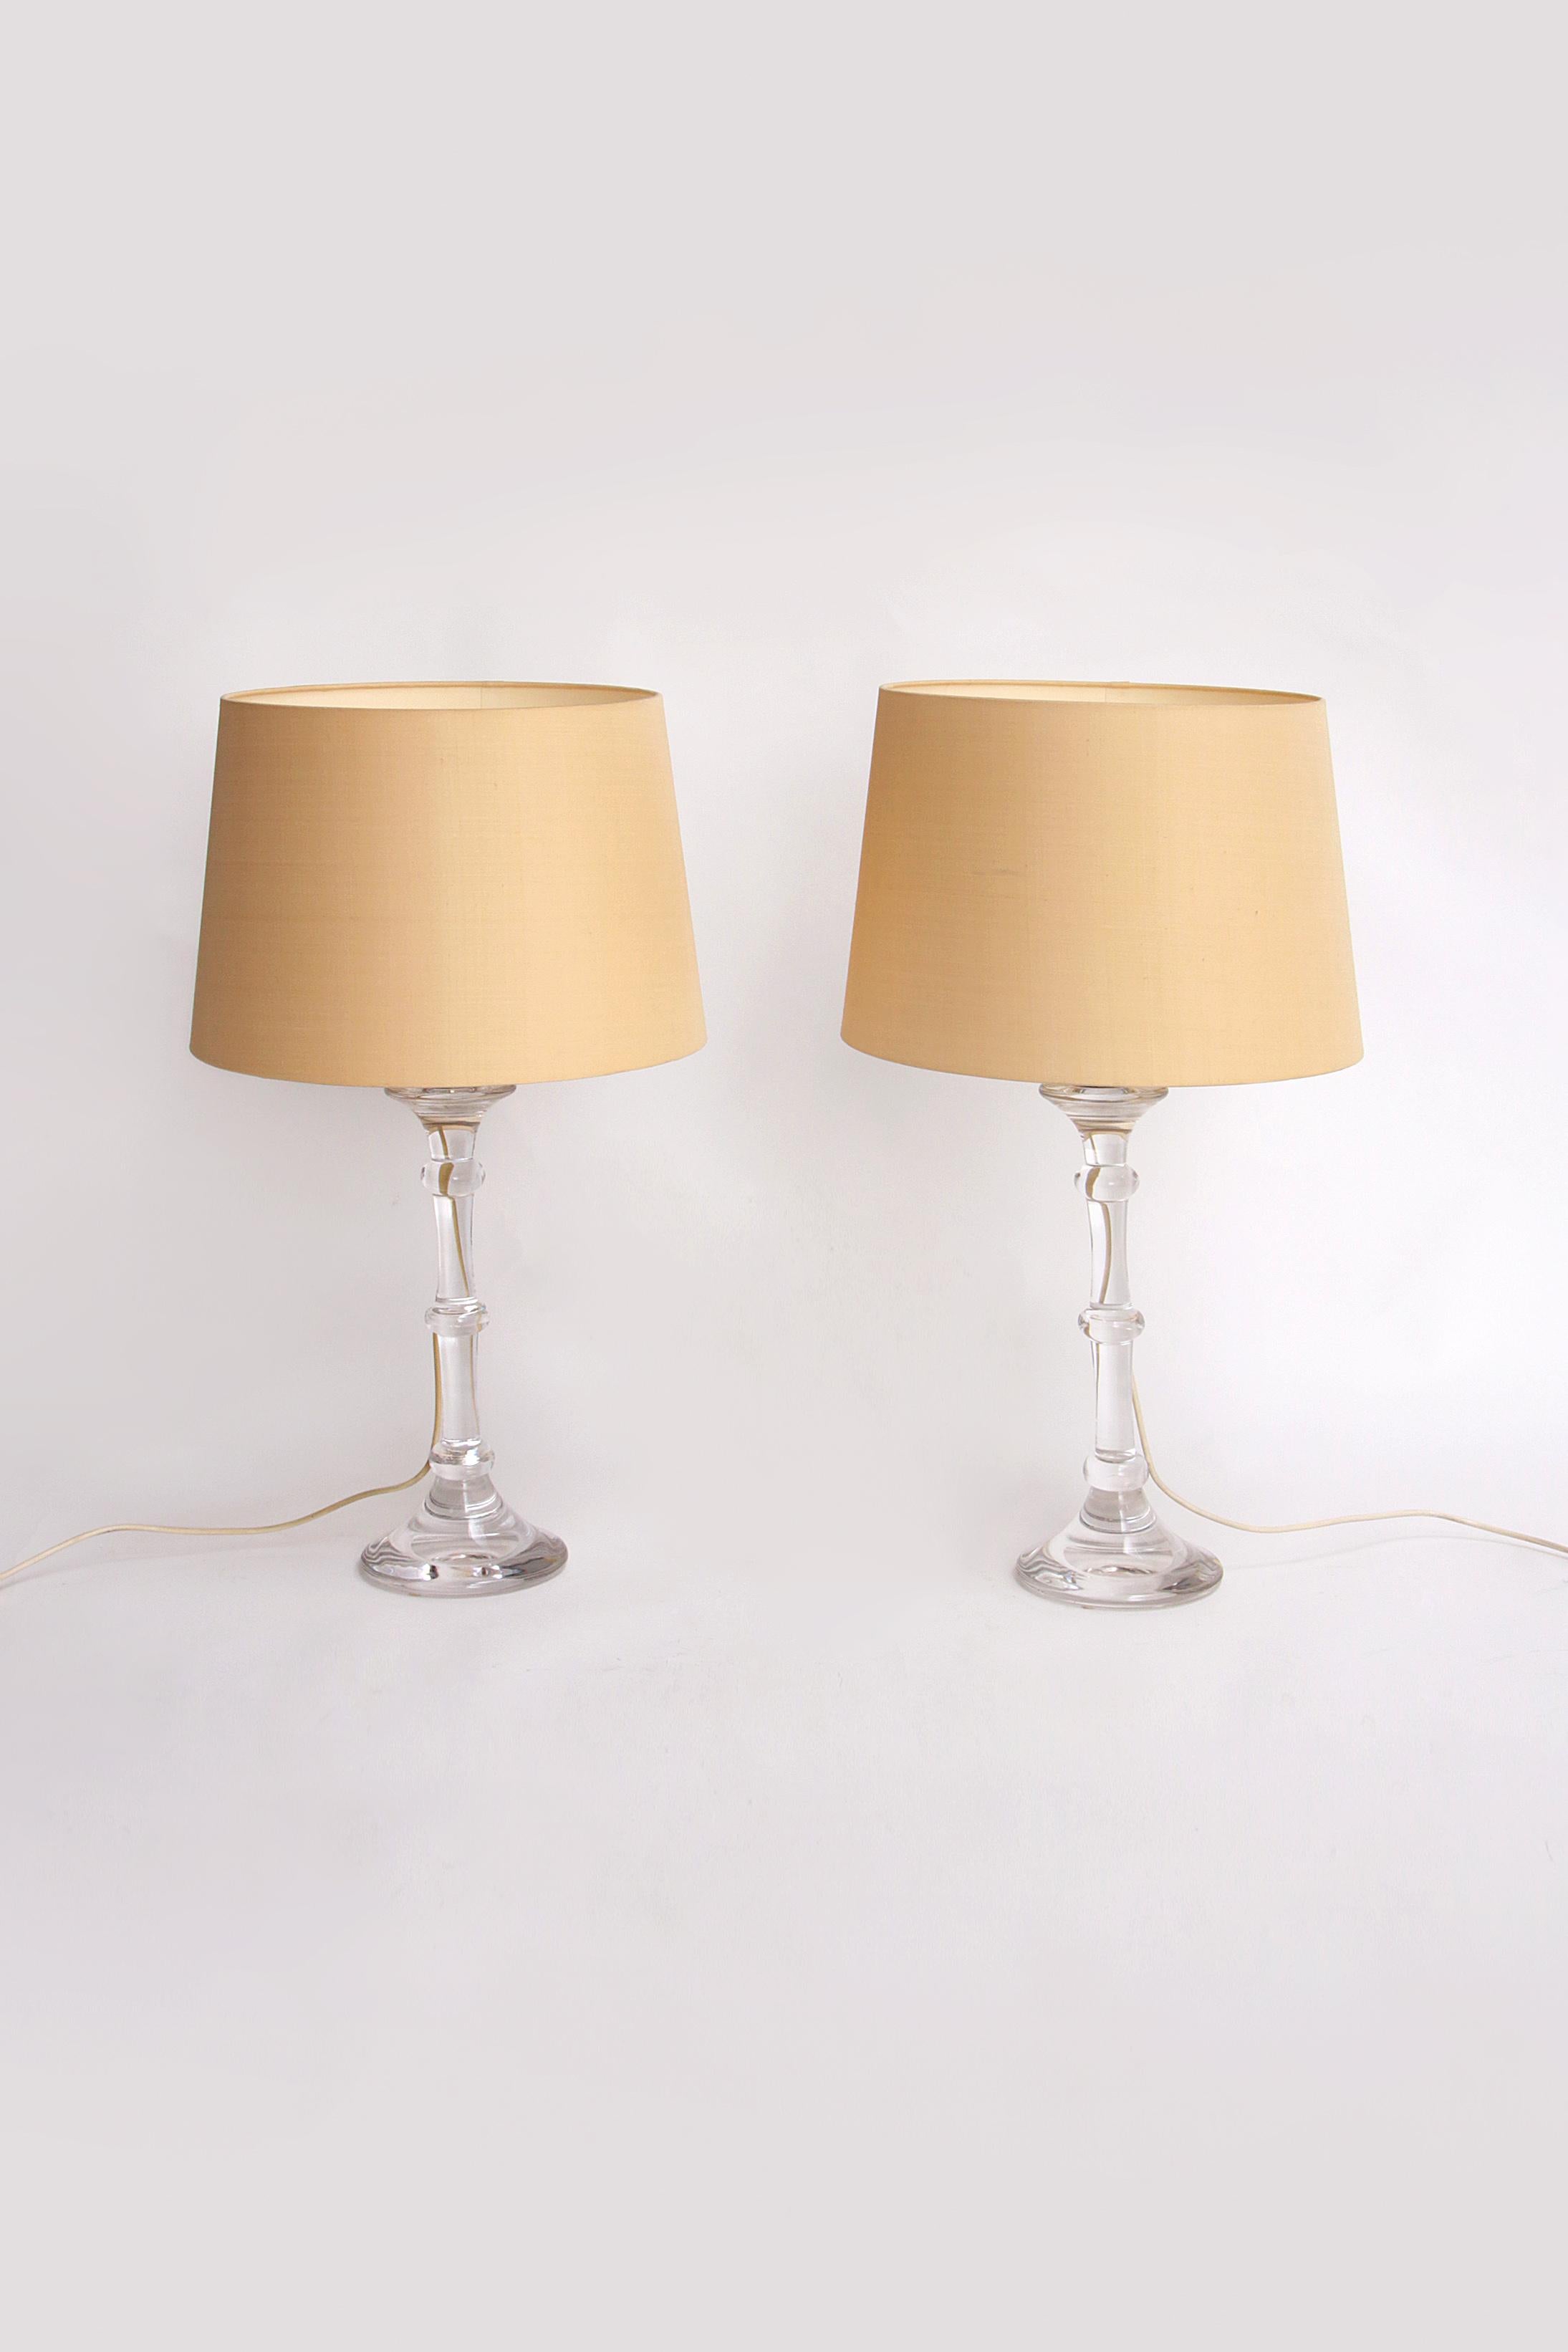 Ensemble de lampes design soufflées à la bouche avec abat-jour crème d'Ingo Maurer, 1960


Découvrez l'exclusivité et le savoir-faire d'Ingo Maurer avec ce magnifique ensemble de lampes design soufflées à la bouche. Ces lampes uniques sont